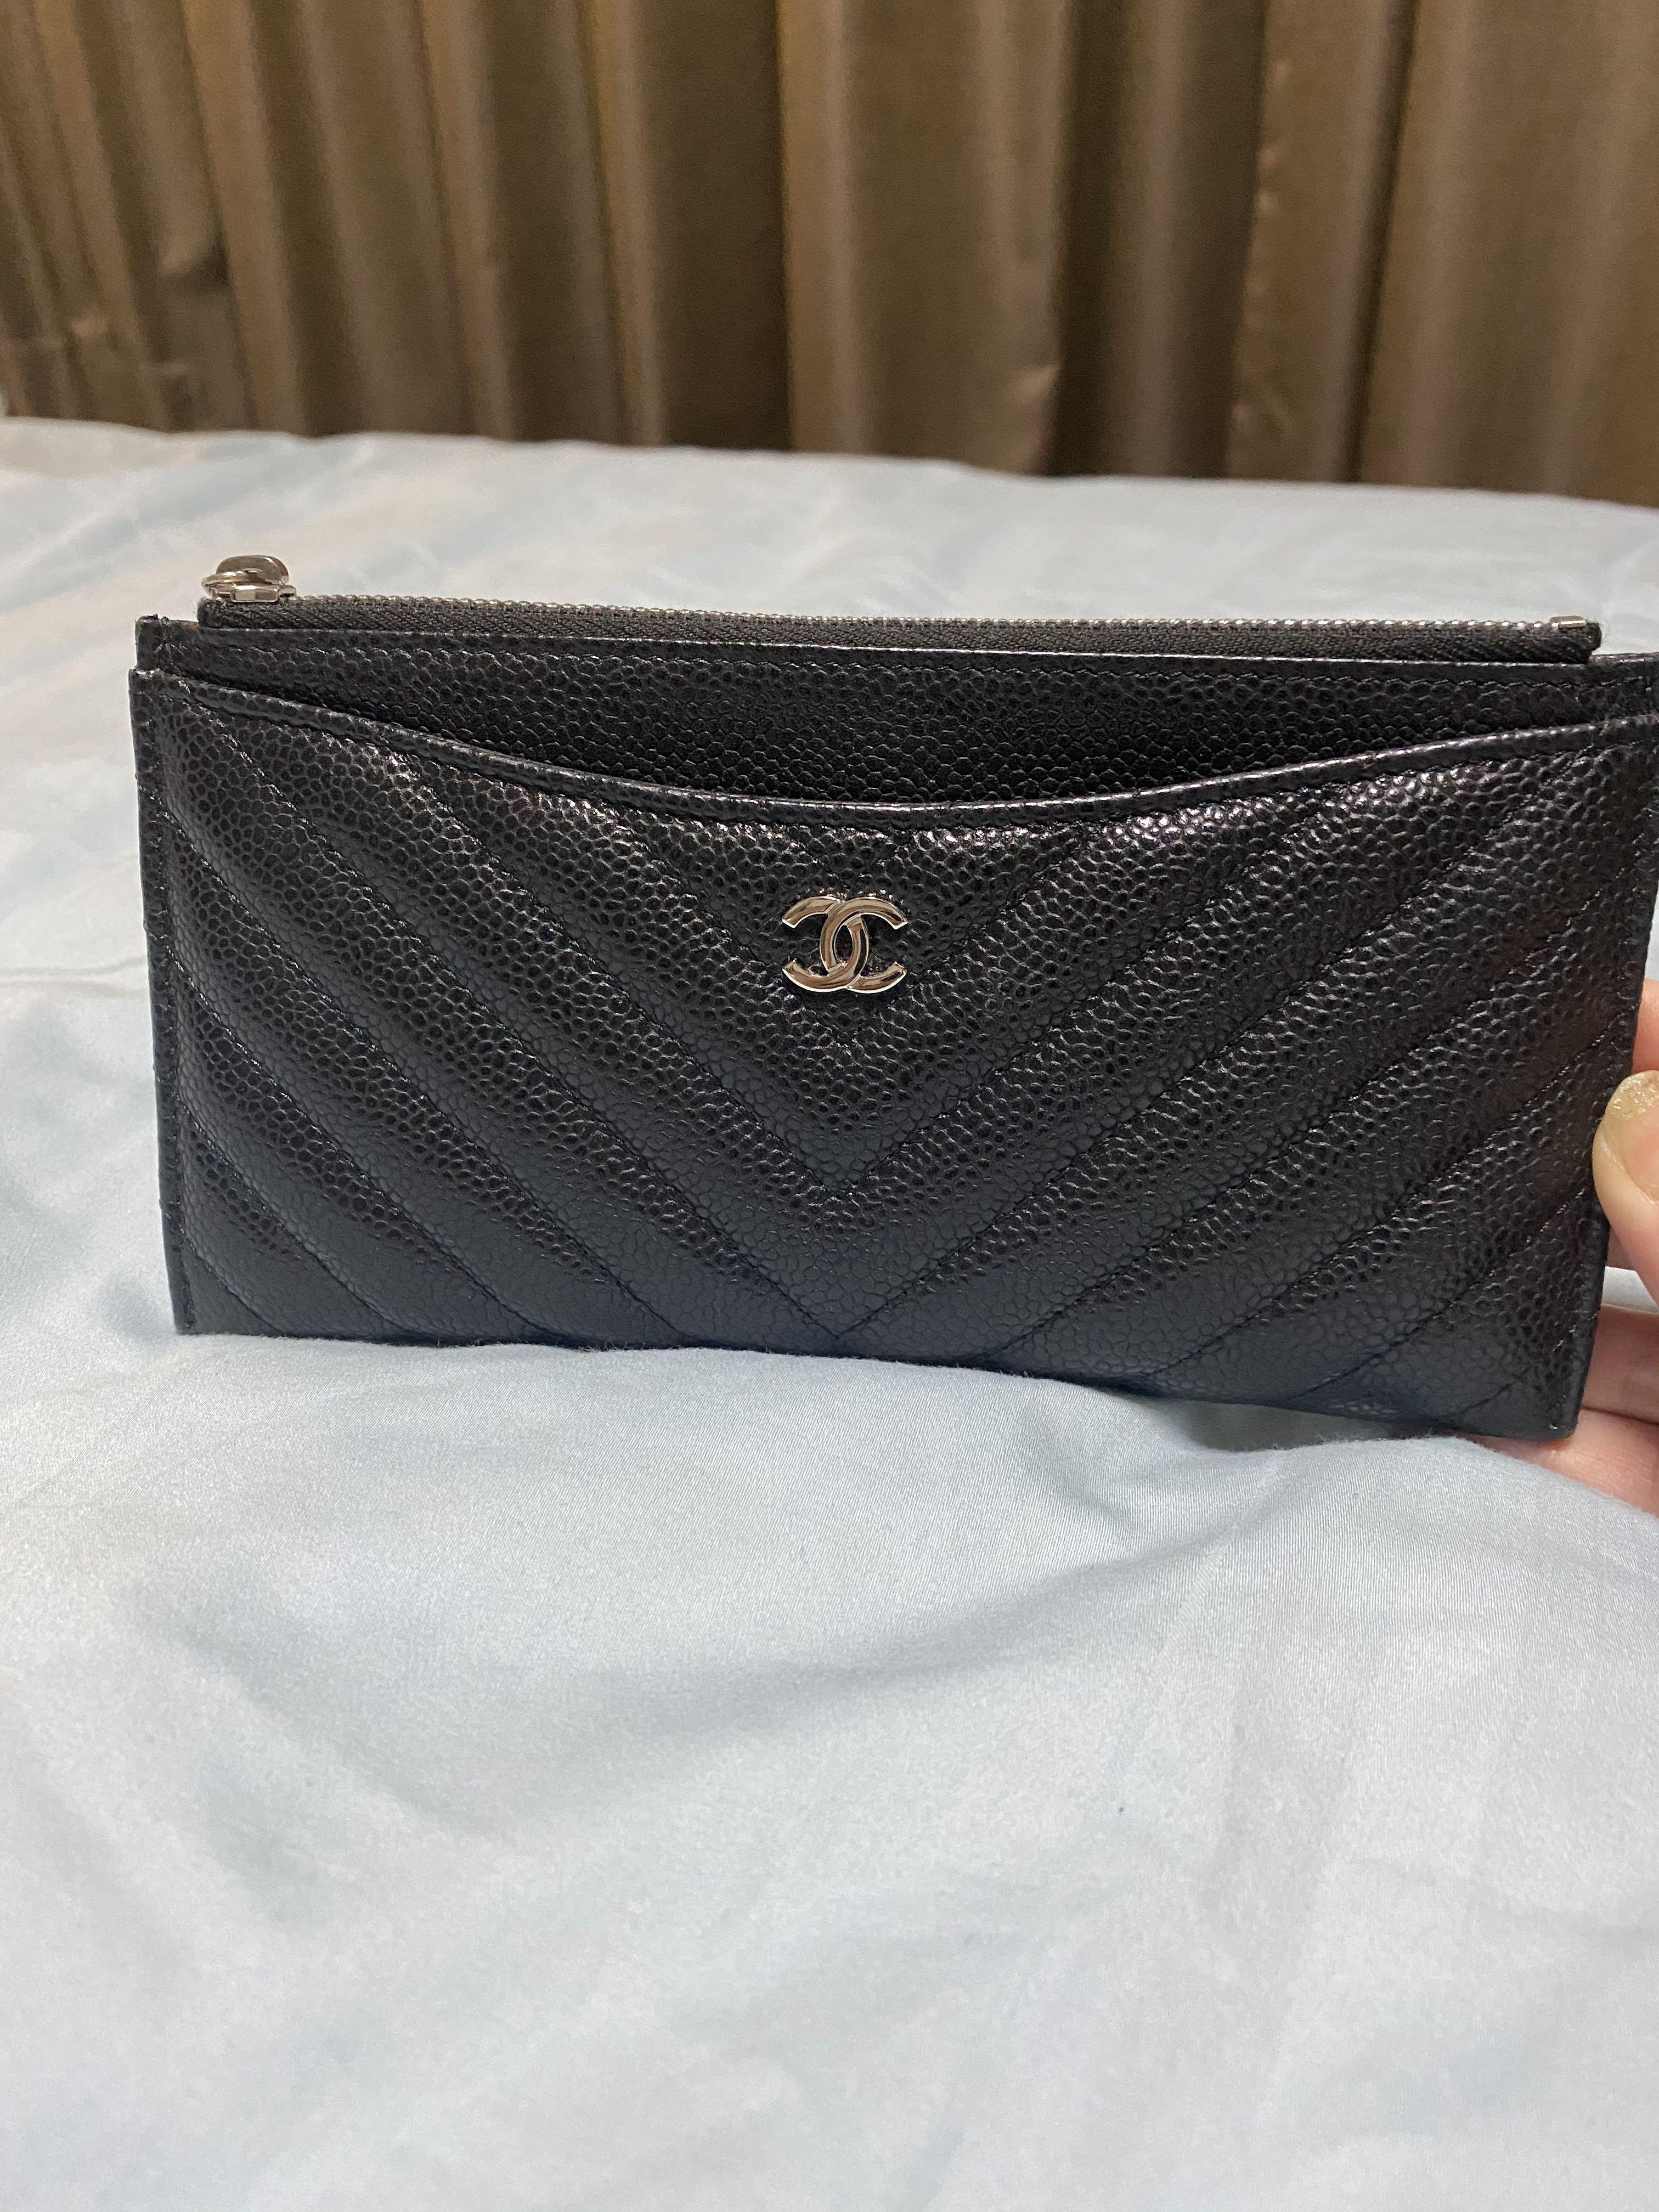 Chanel 19 Flat Wallet